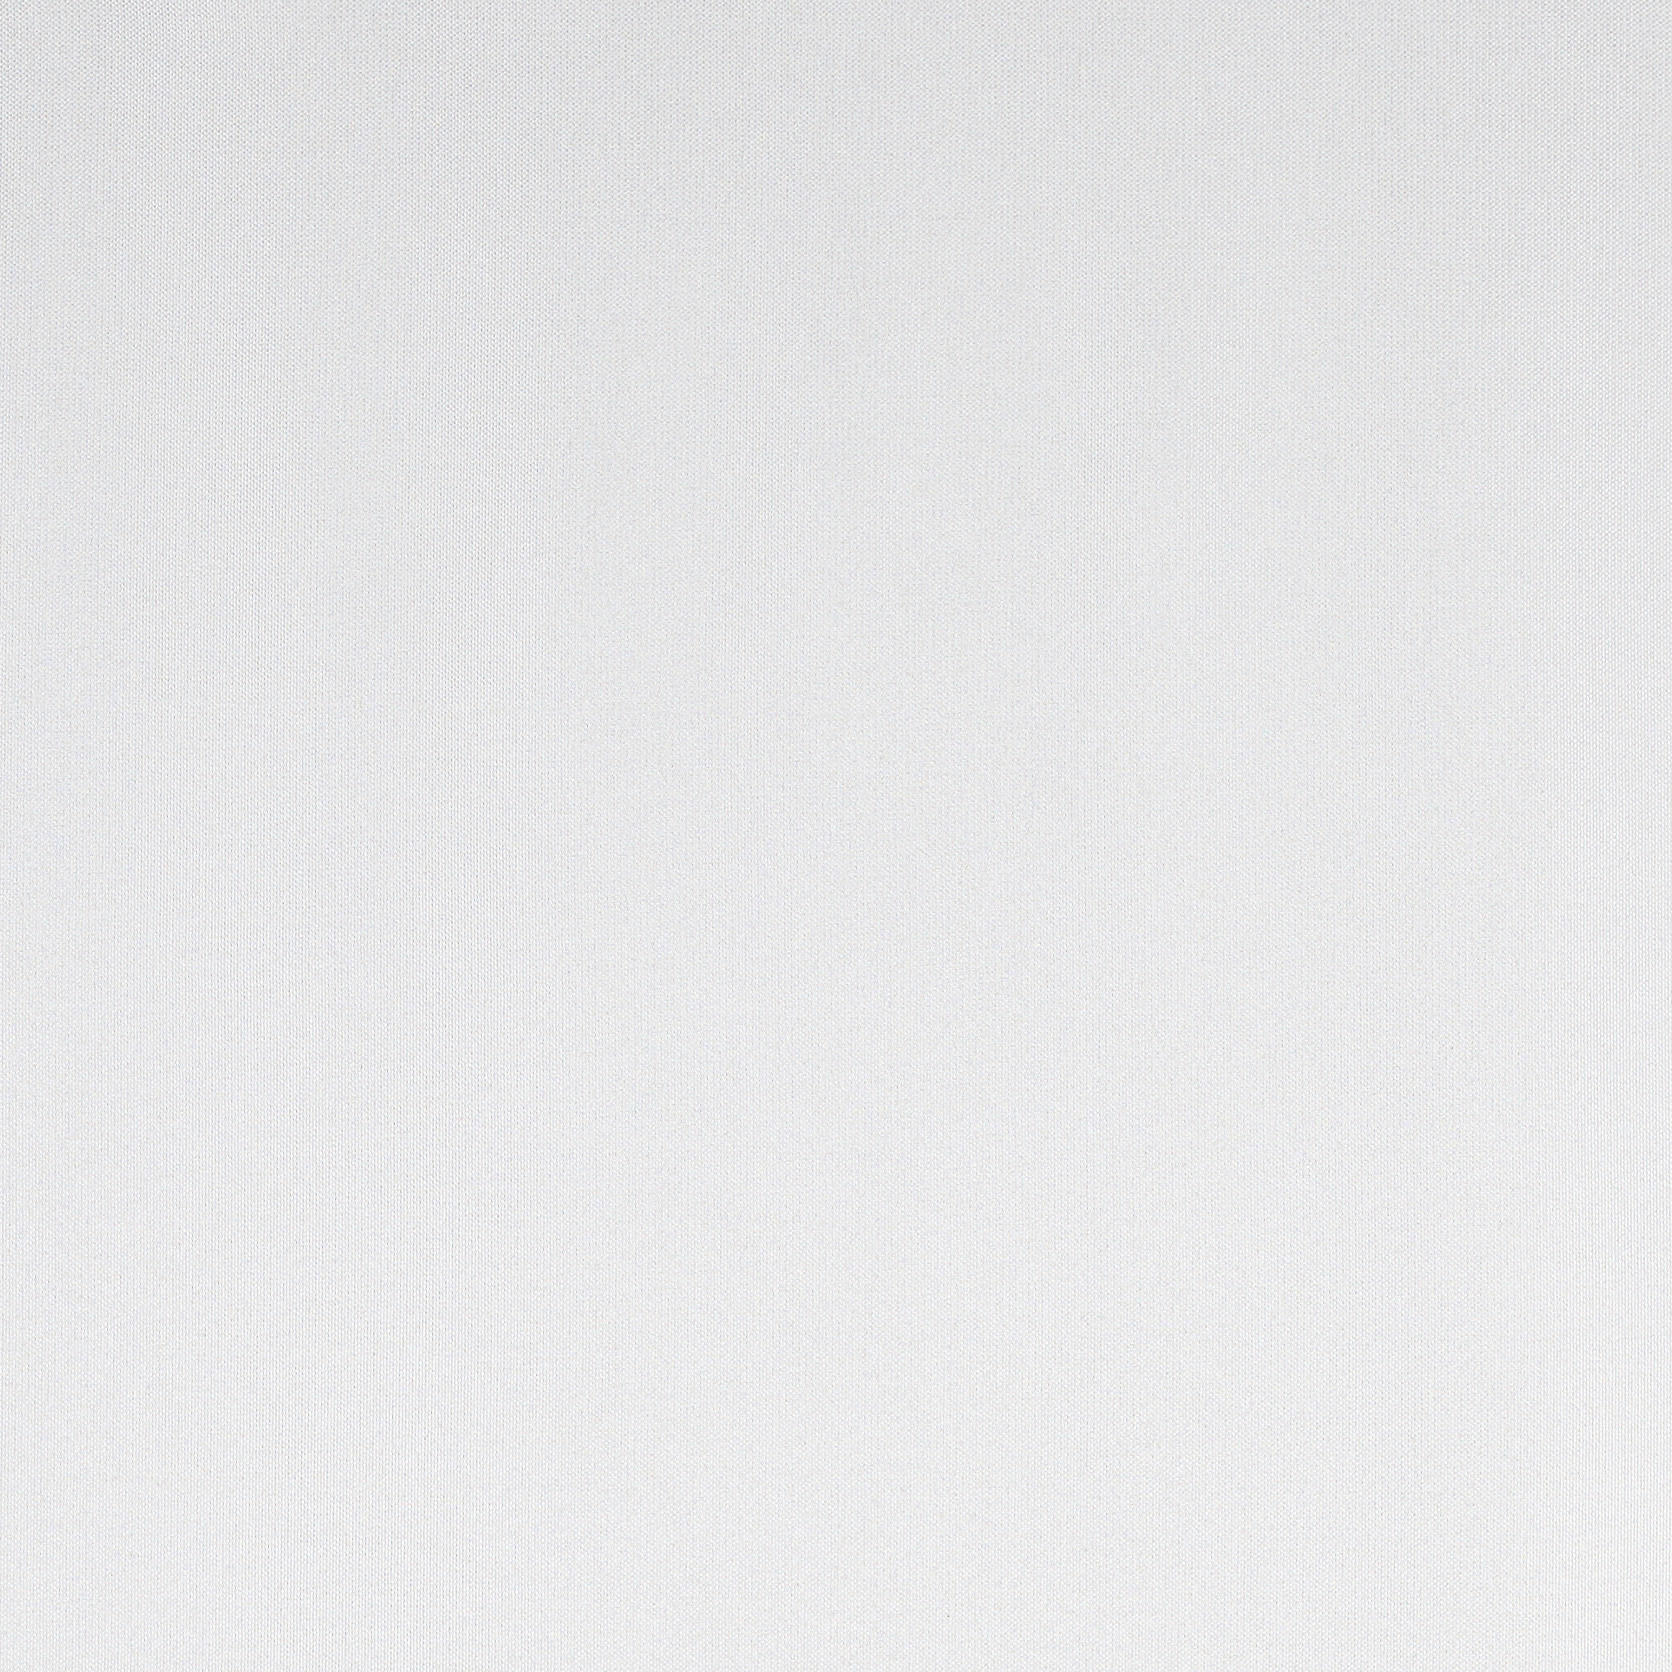 FERTIGVORHANG CAVA black-out (lichtundurchlässig) 140/245 cm   - Ecru, KONVENTIONELL, Textil (140/245cm) - Dieter Knoll